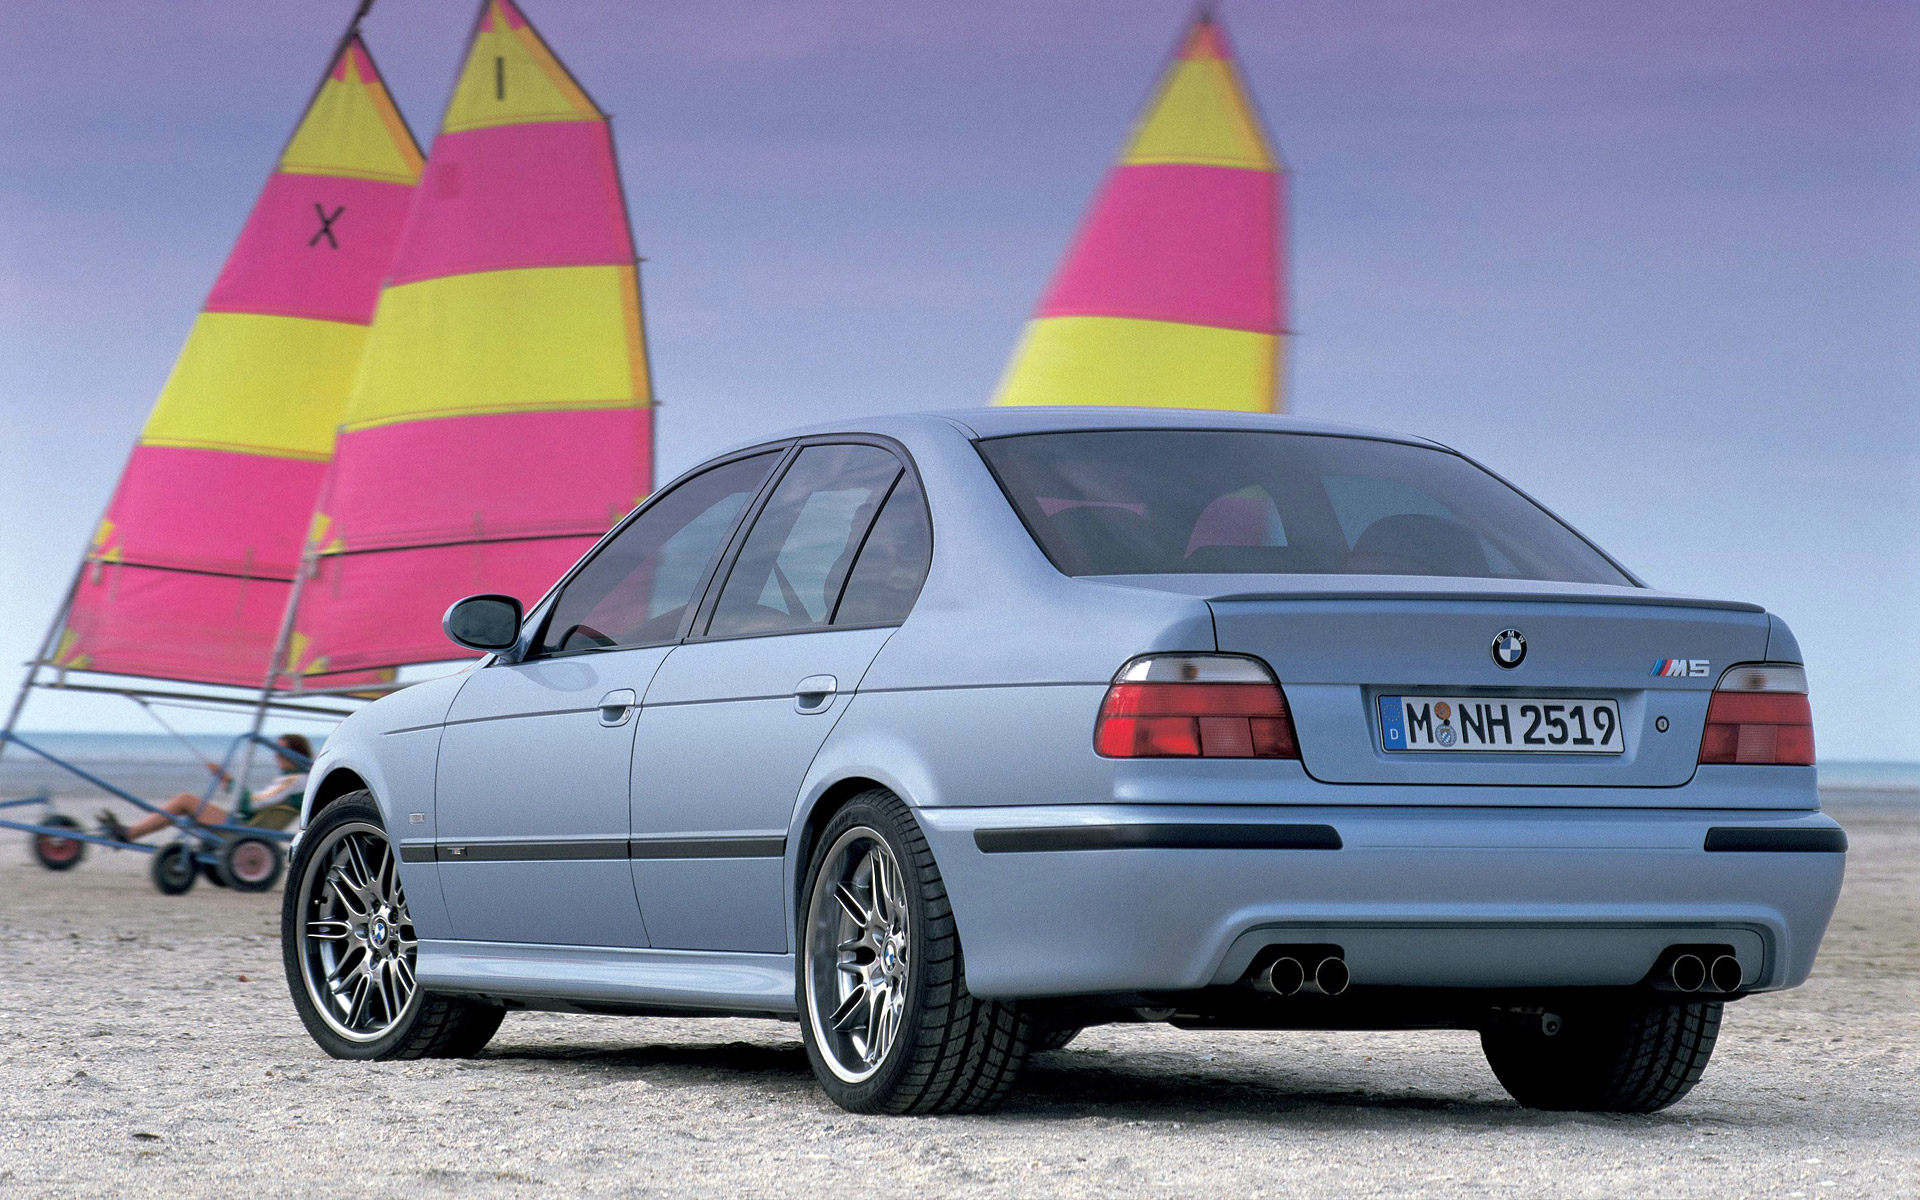  1998 BMW M5 Wallpaper.